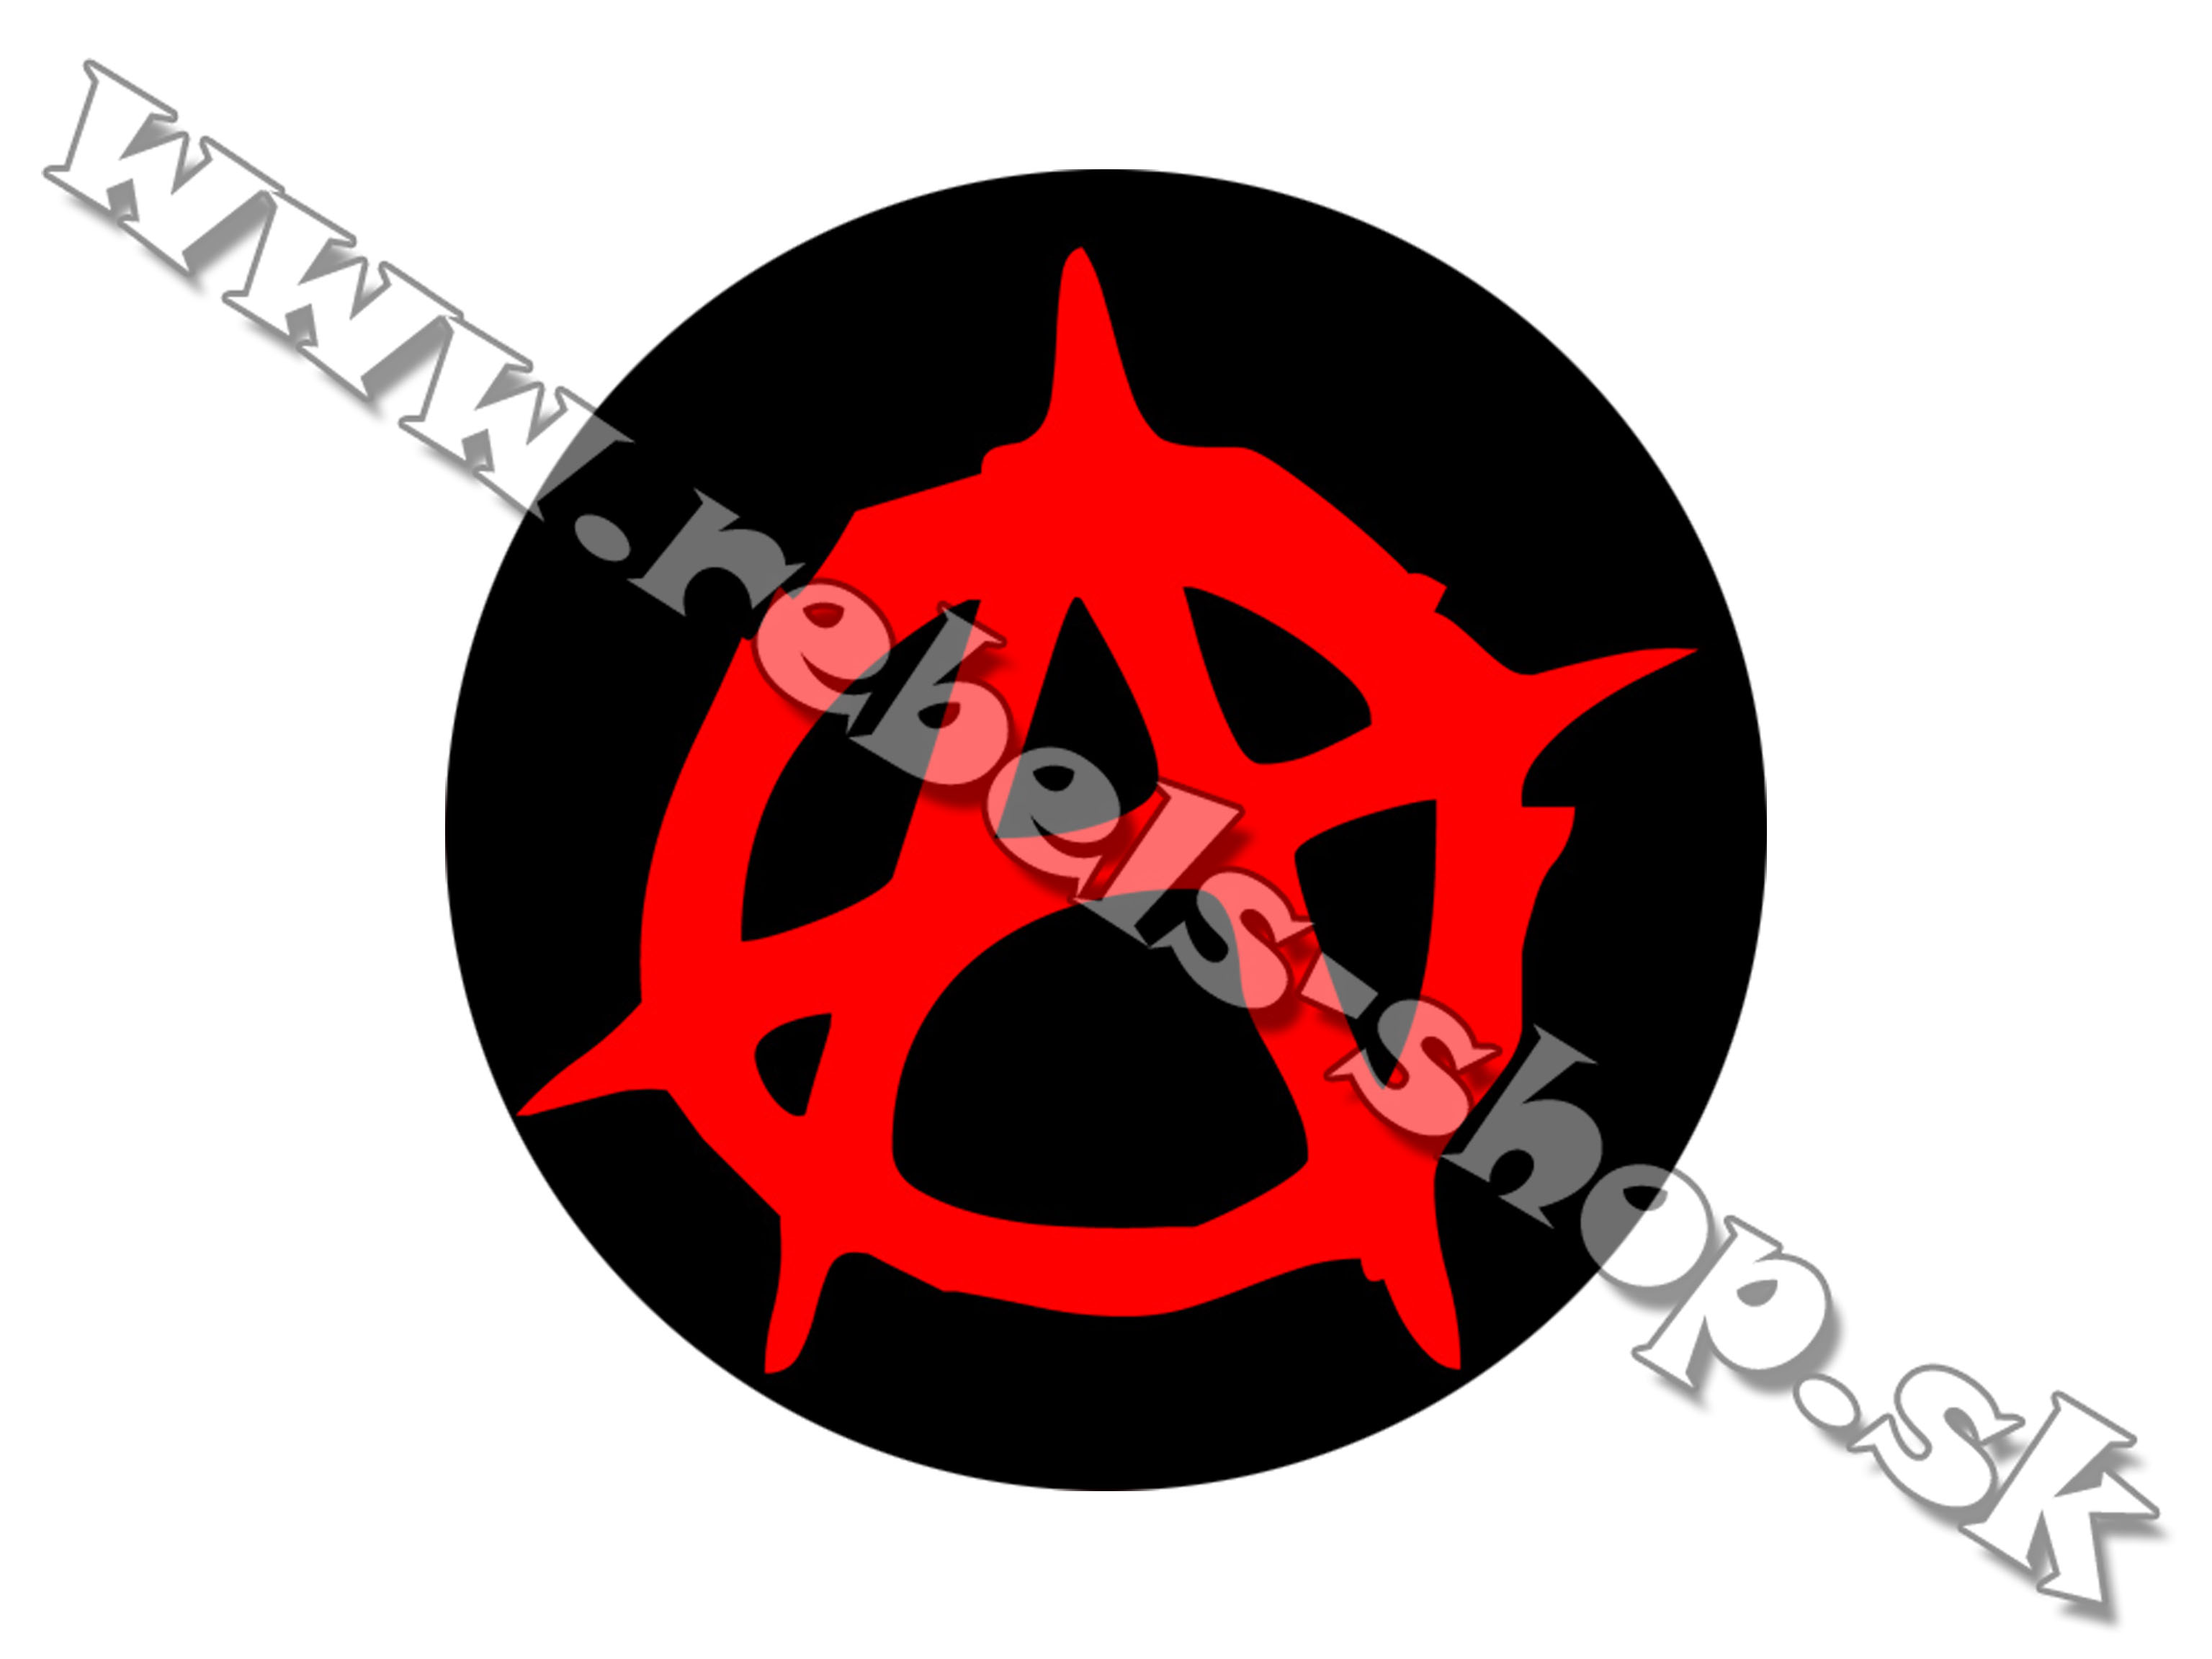 Odznak "Anarchy"